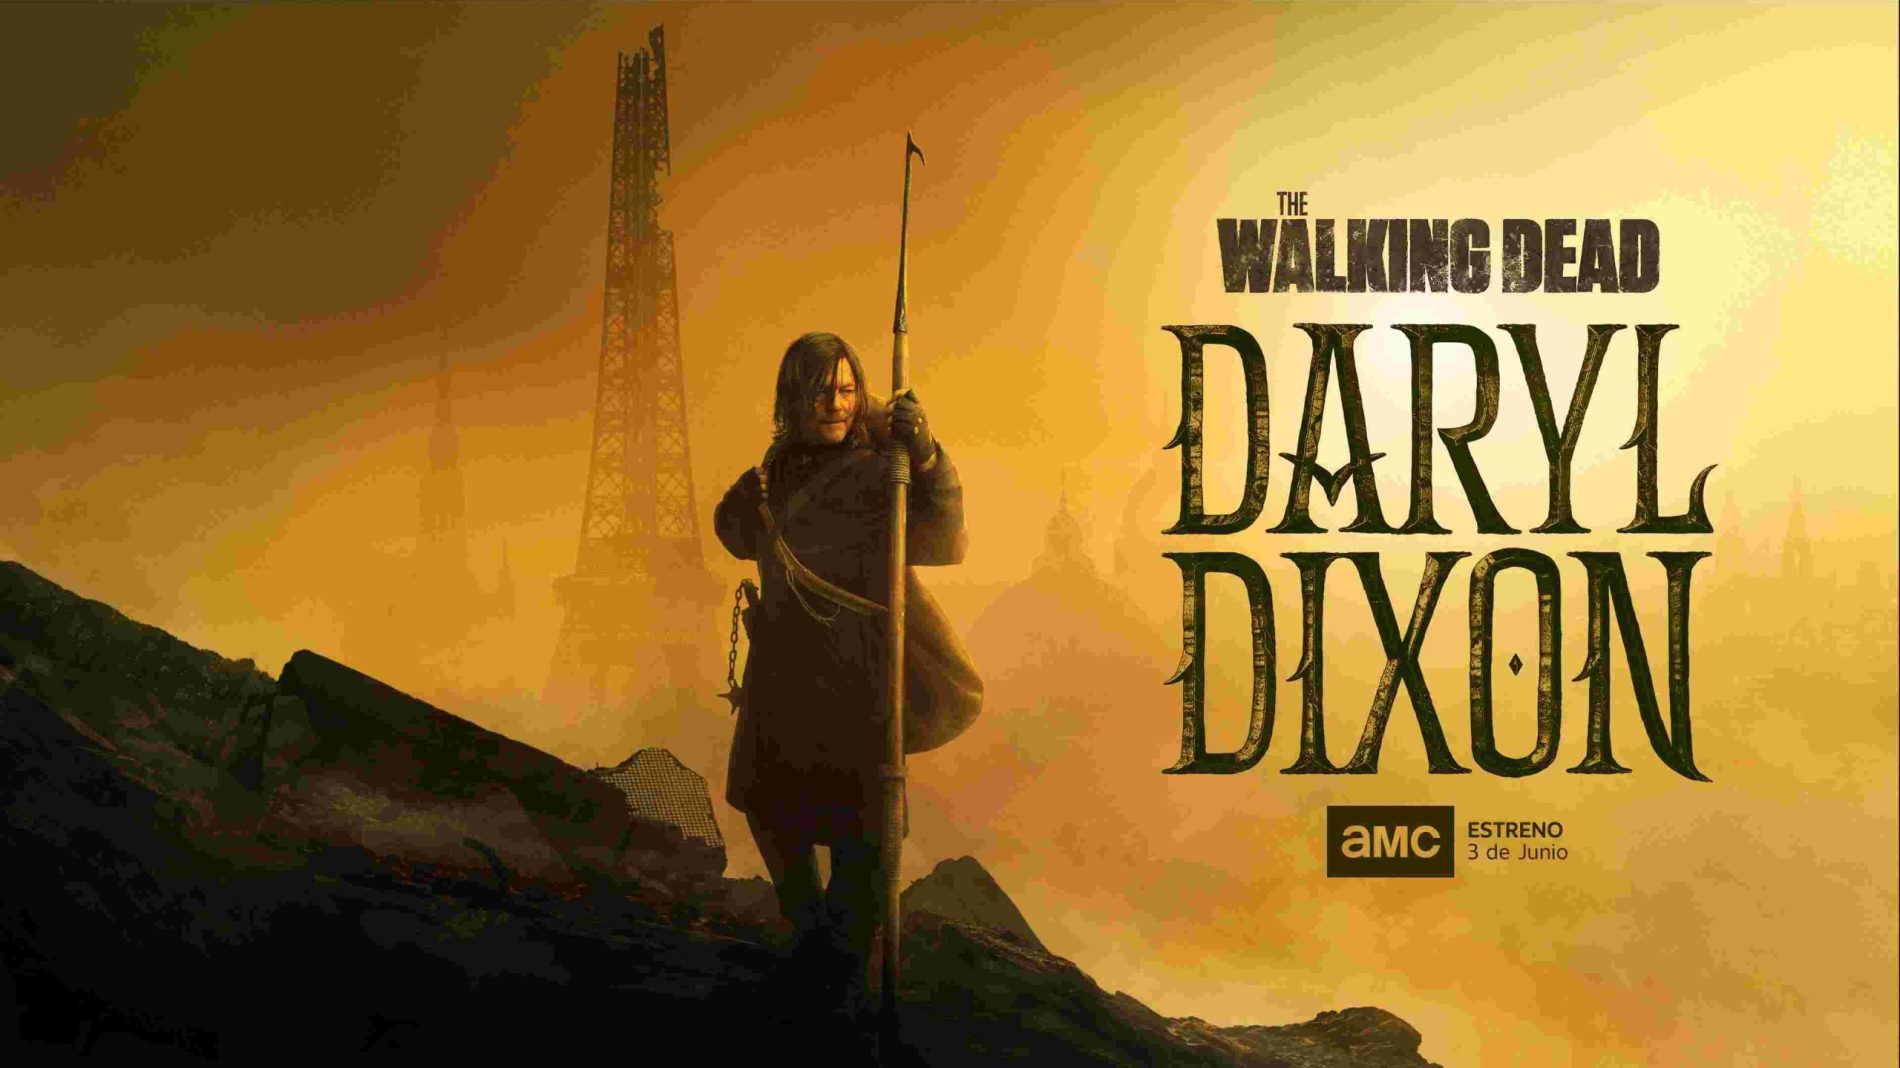 «The Walking Dead: Daryl Dixon» se estrena en Colombia